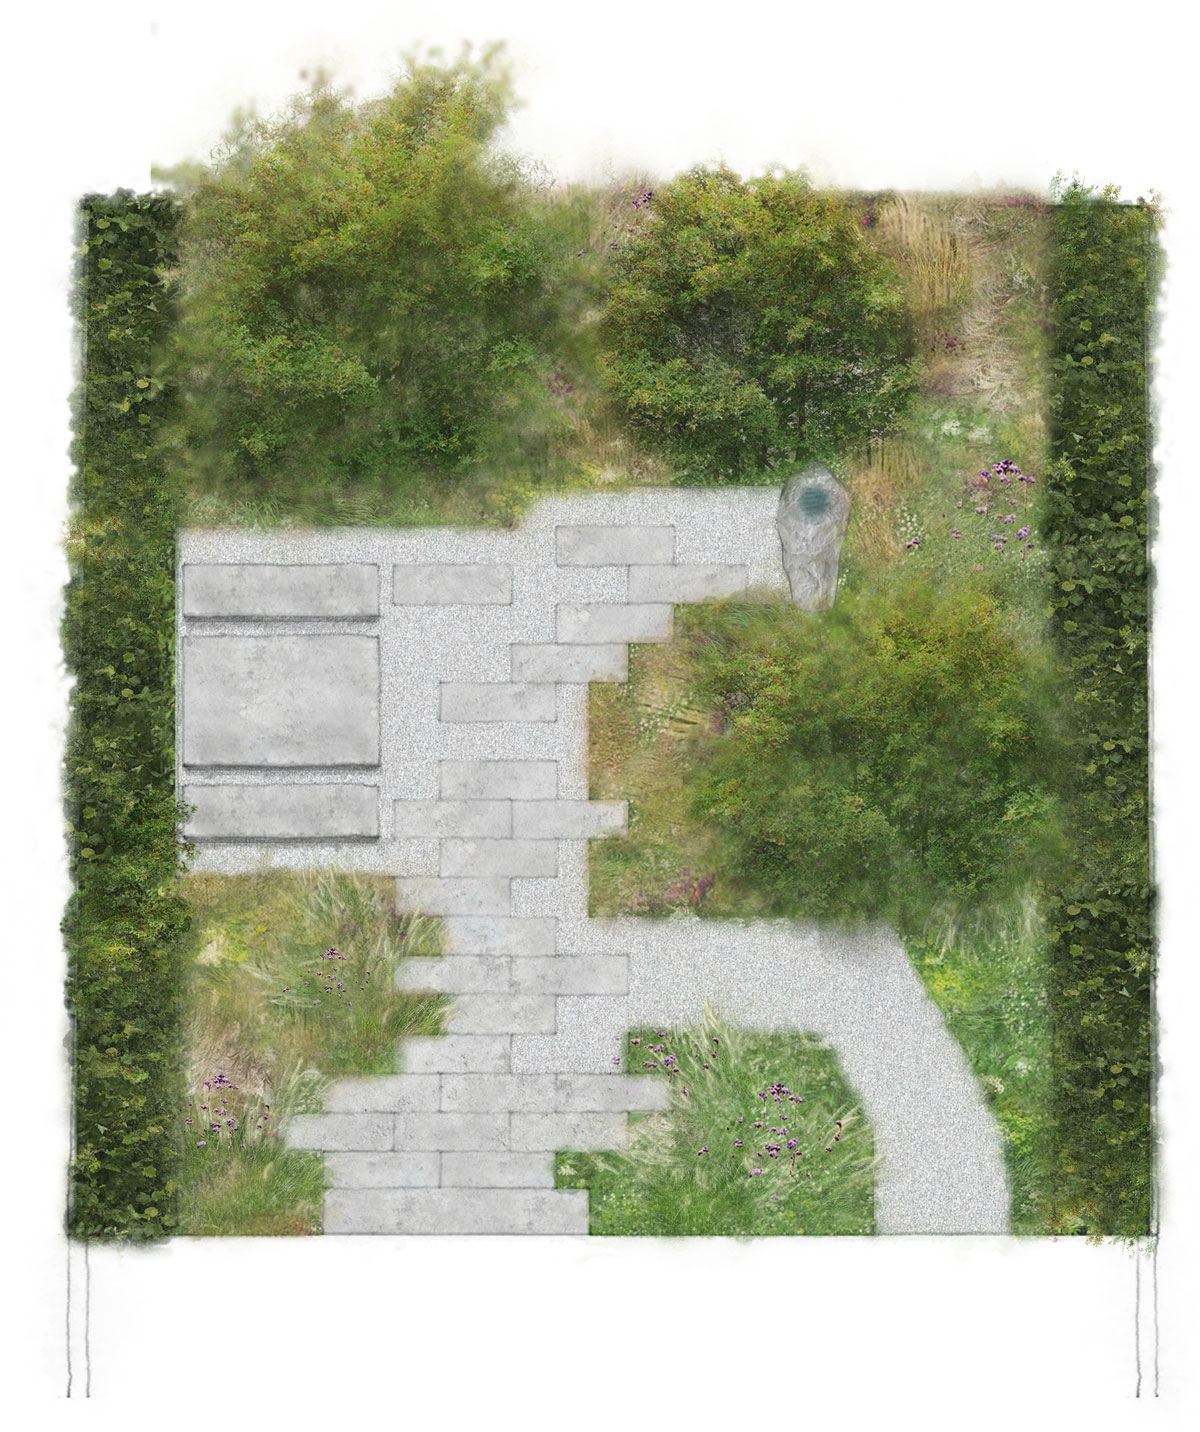 Colm Joseph Gardens - Cambridge contemporary garden design plan